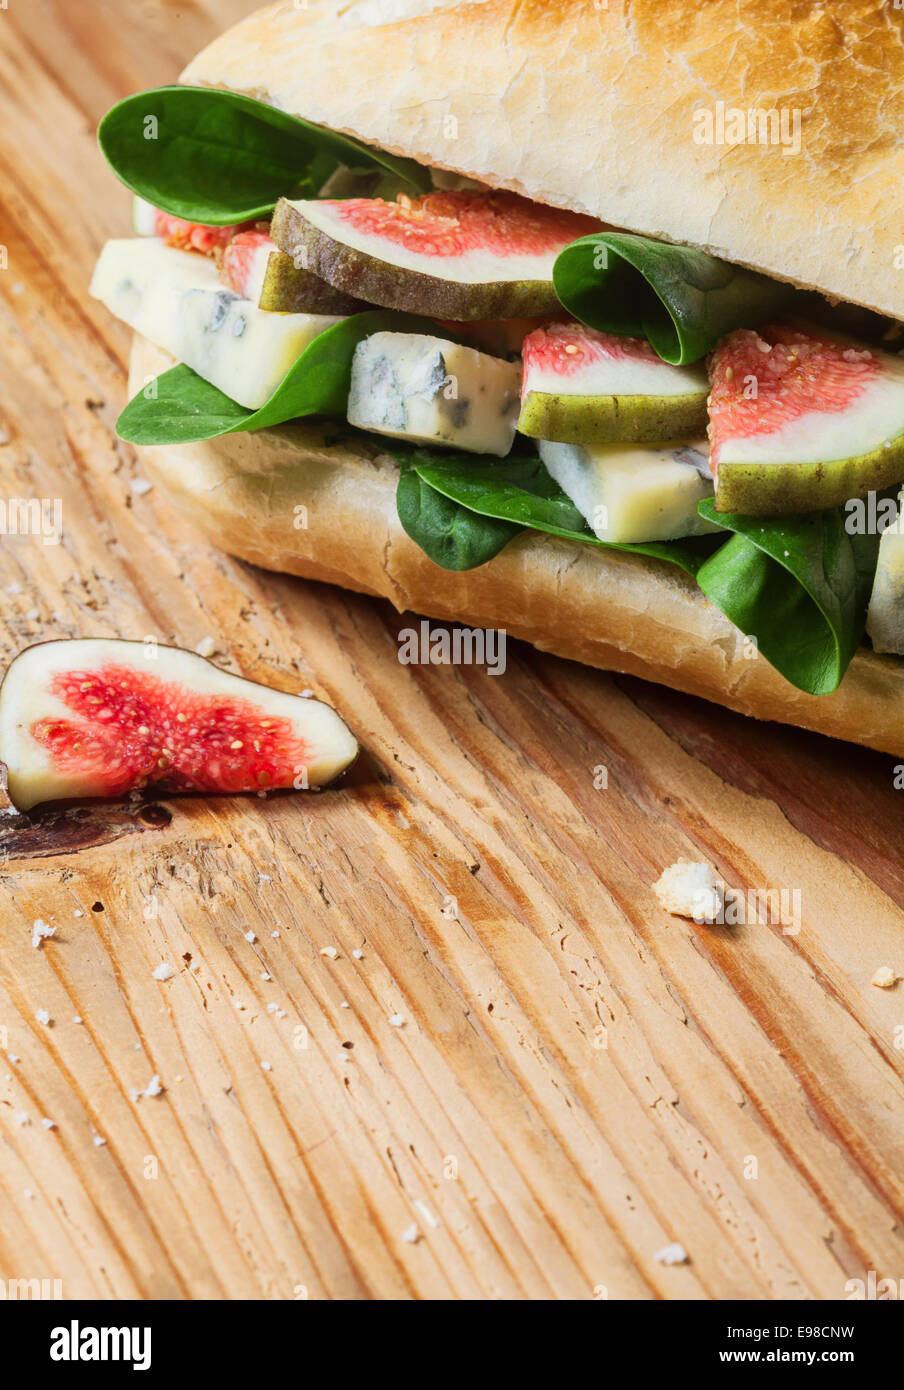 Herzhaft frisch gebacken Roll gefüllt mit gewürfelten Feigen, Blattspinat und salzig Blauschimmelkäse für einen leckeren gesunden Mittagsimbiss Stockfoto